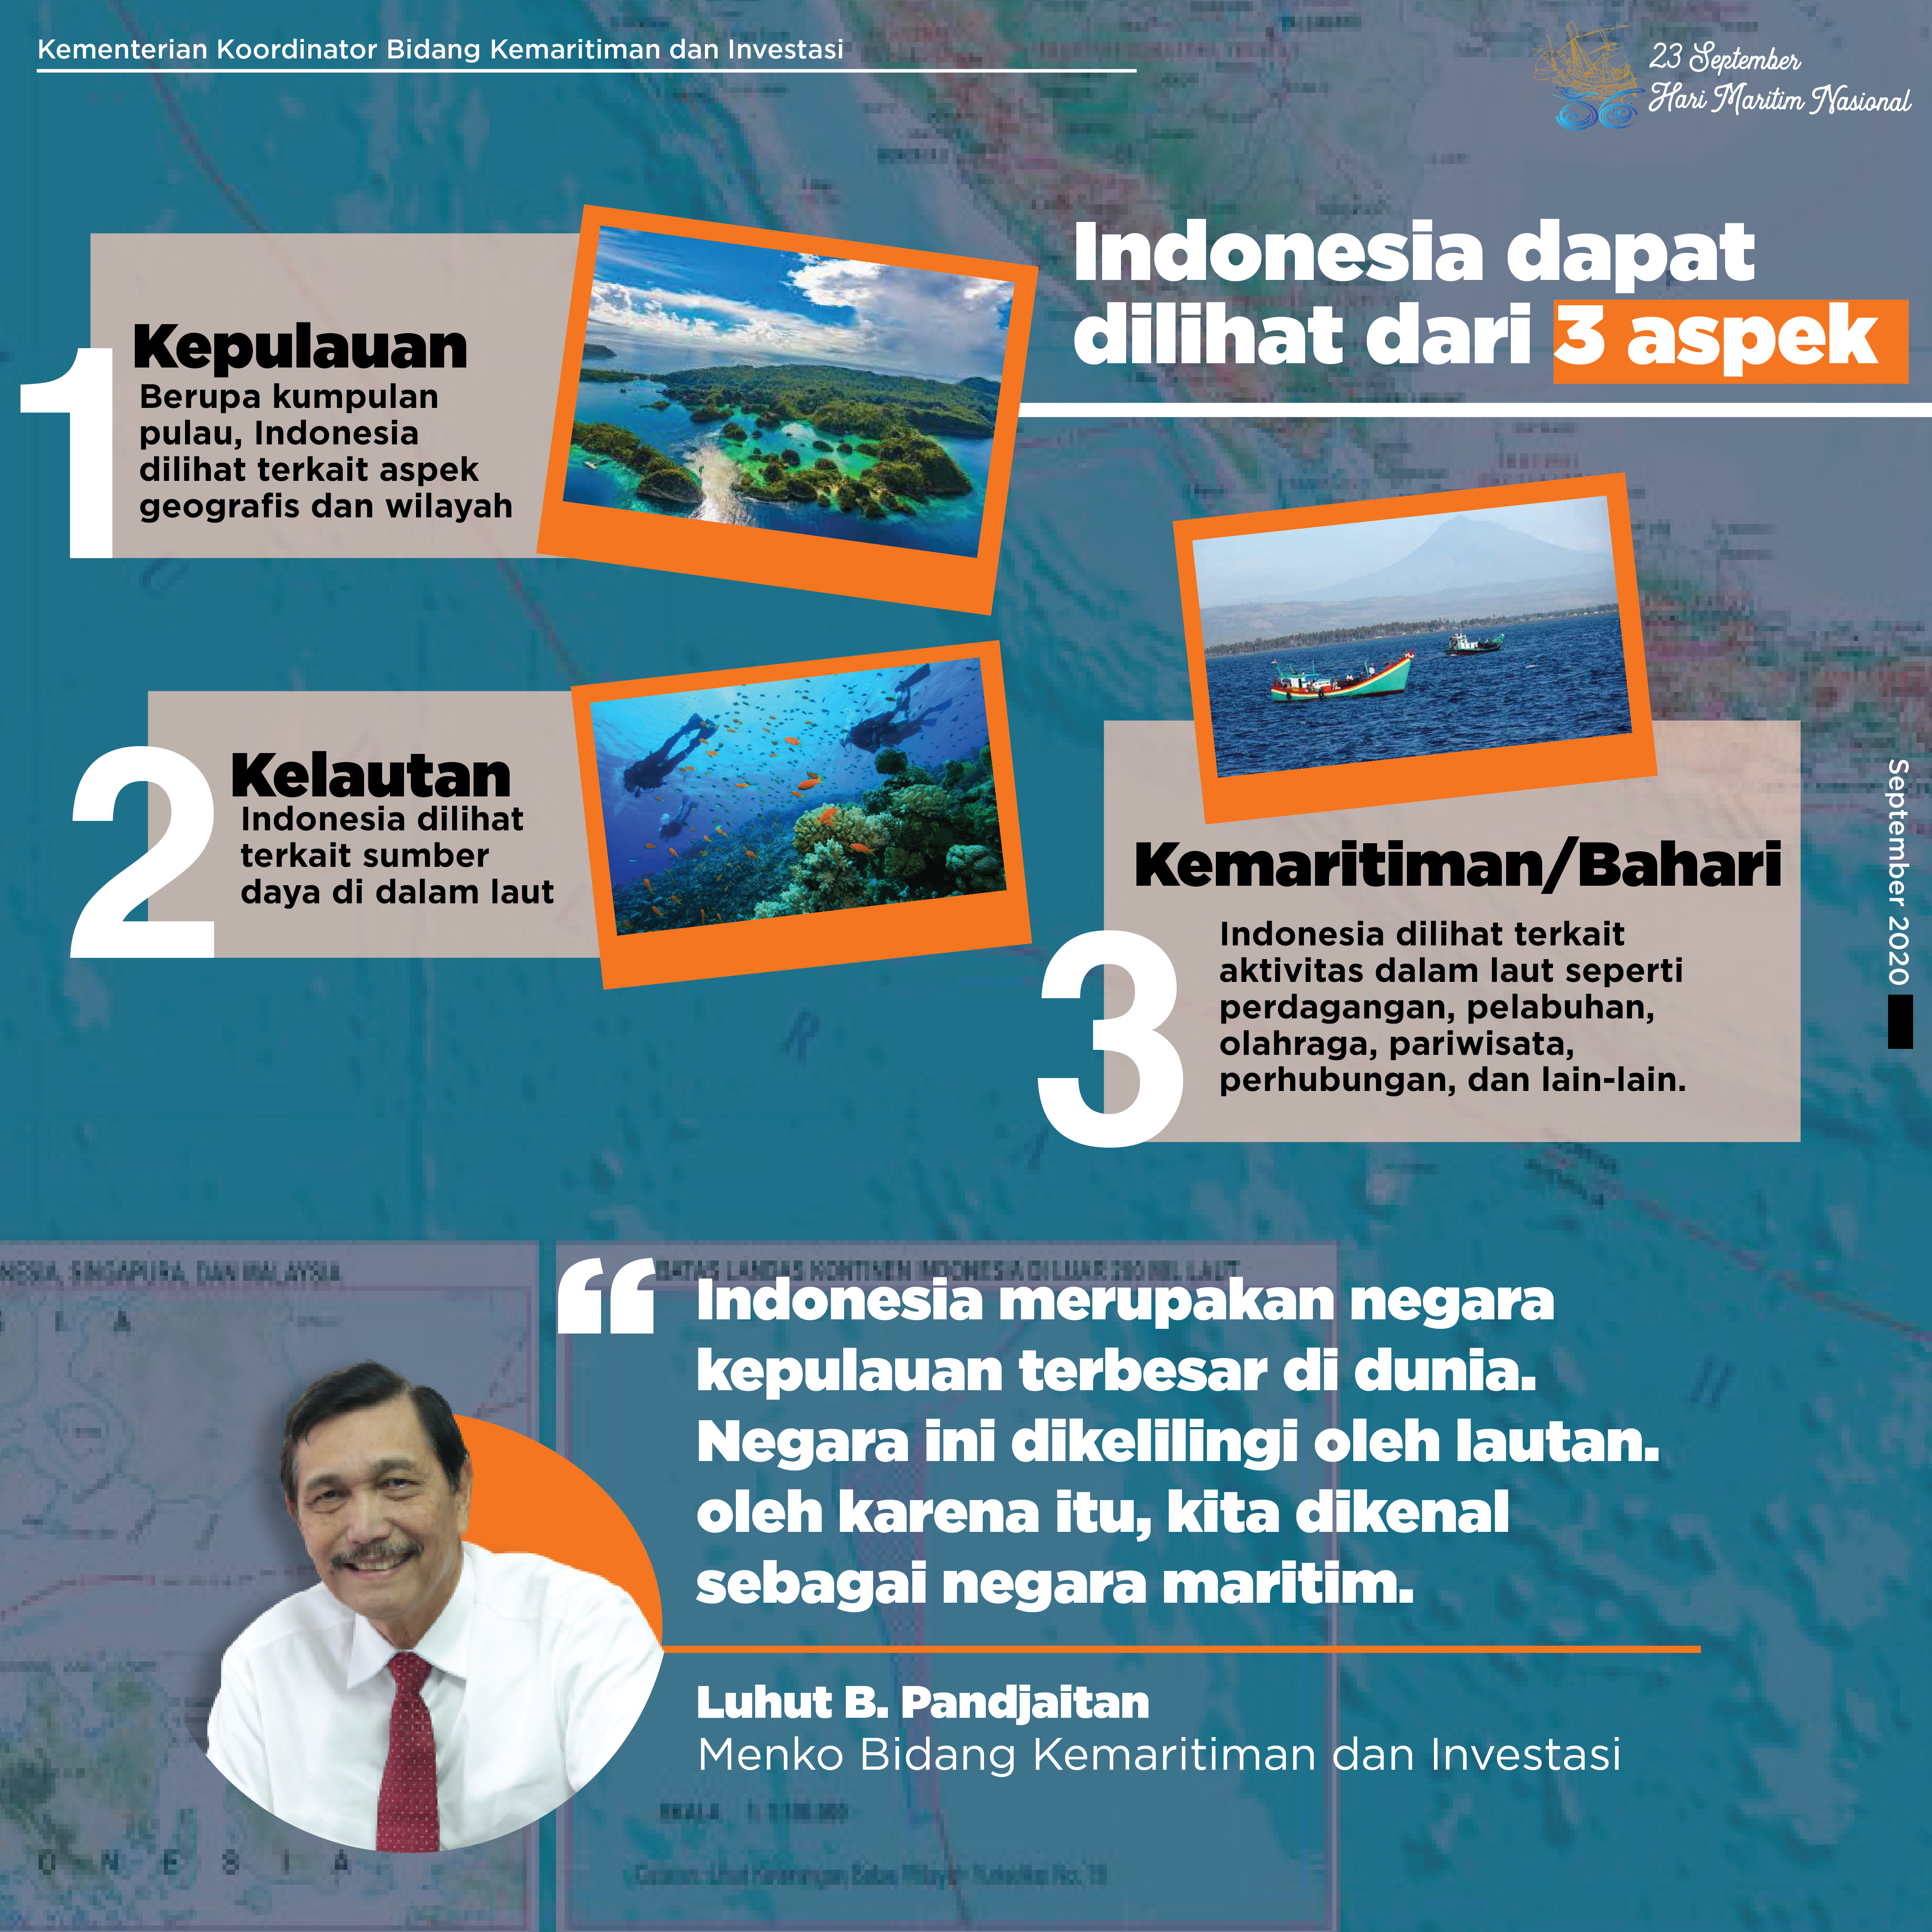 Dua pertiga wilayah indonesia berupa lautan sehingga indonesia disebut sebagai negara